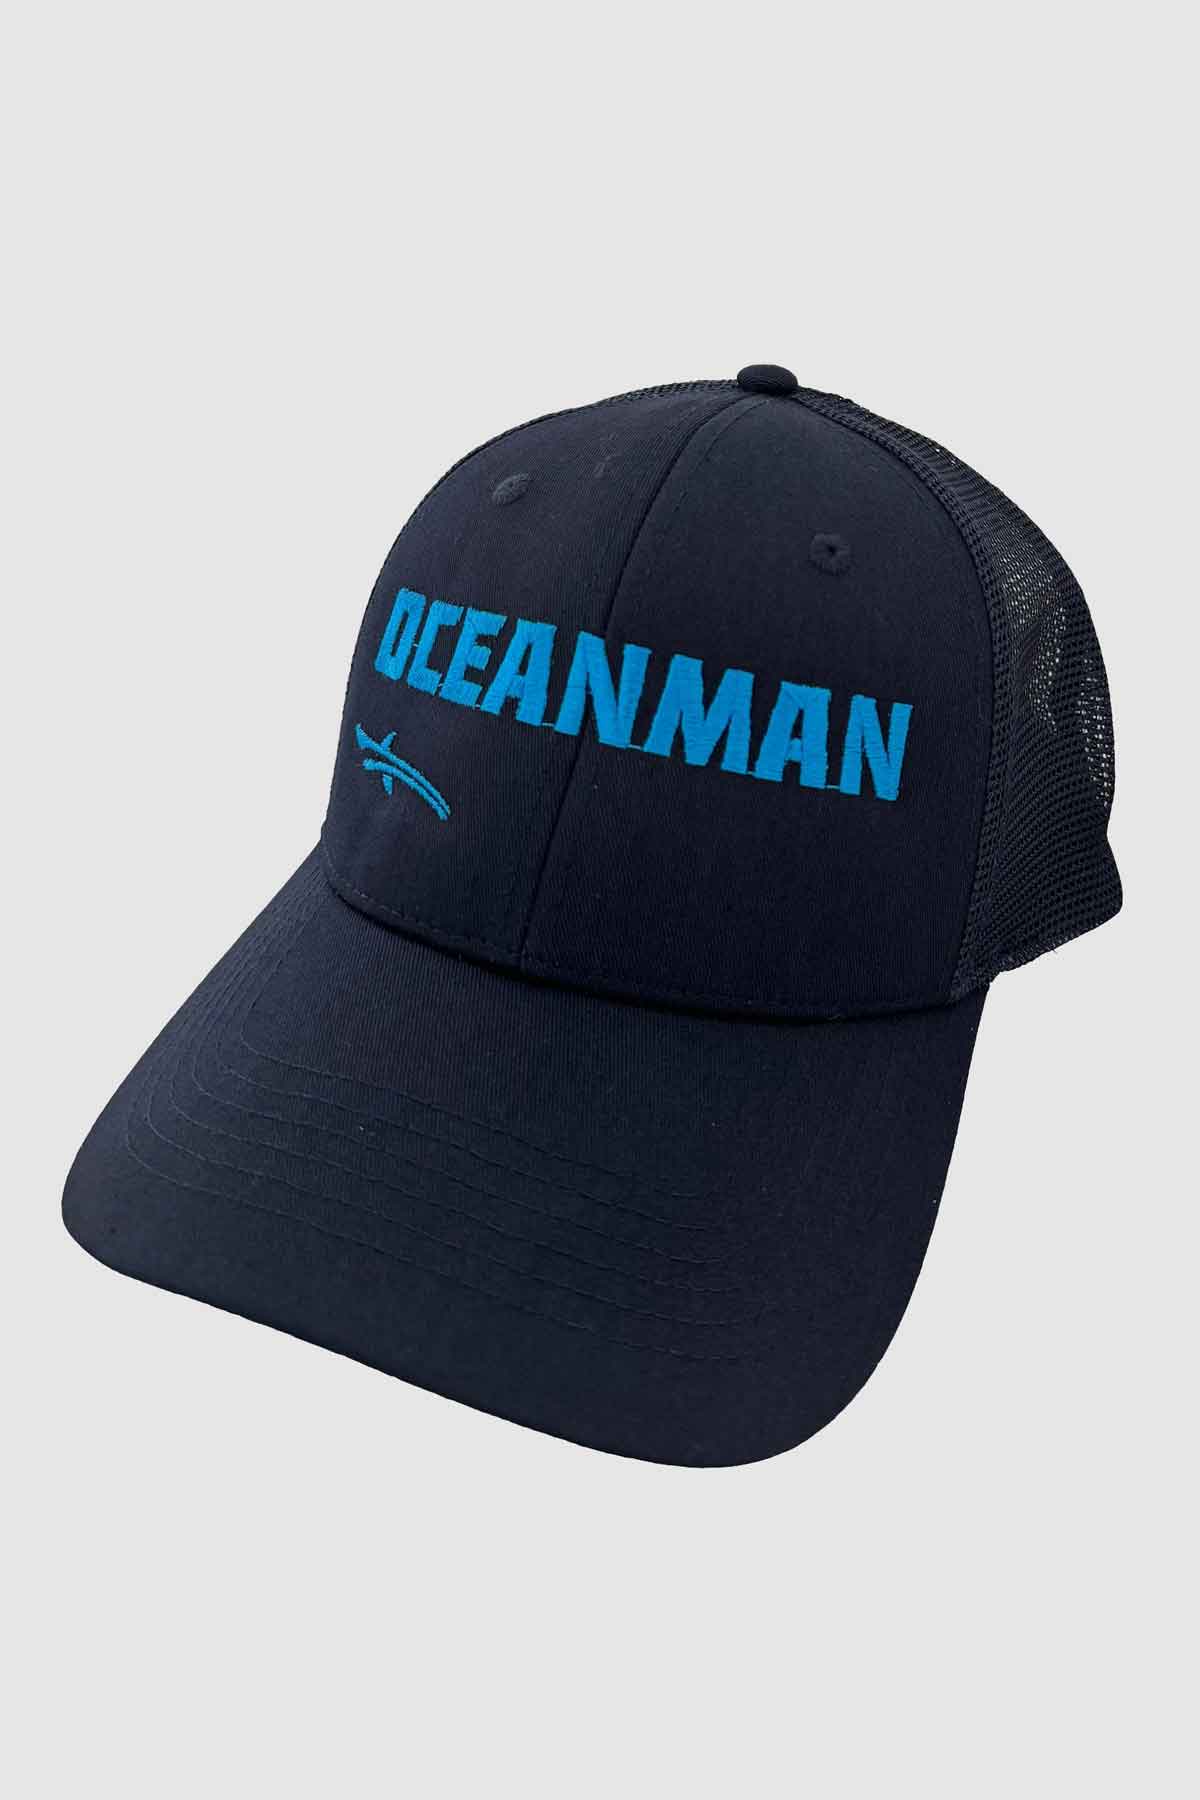 oceanman cap black and blue